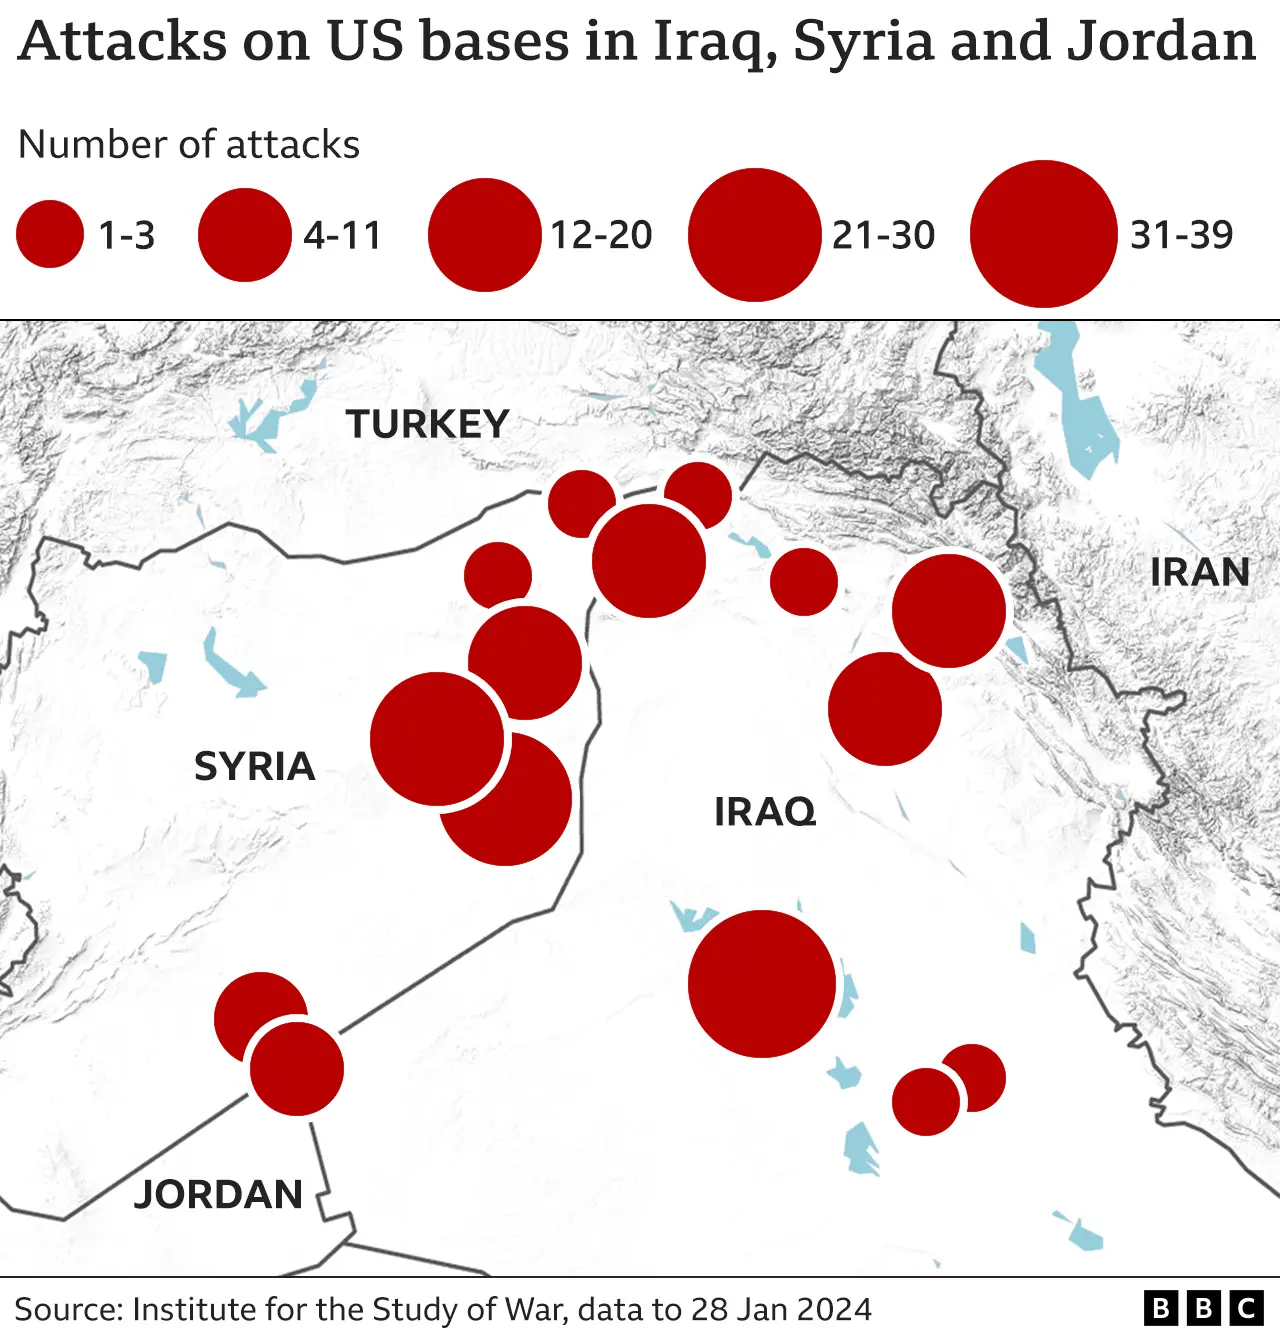 Bản đồ bao gồm Syria, Iraq, Jordan và Thổ Nhĩ Kỳ, với các cuộc tấn công vào các căn cứ của Mỹ được đánh dấu bằng vòng tròn màu đỏ. Hầu hết là ở Syria và Iraq